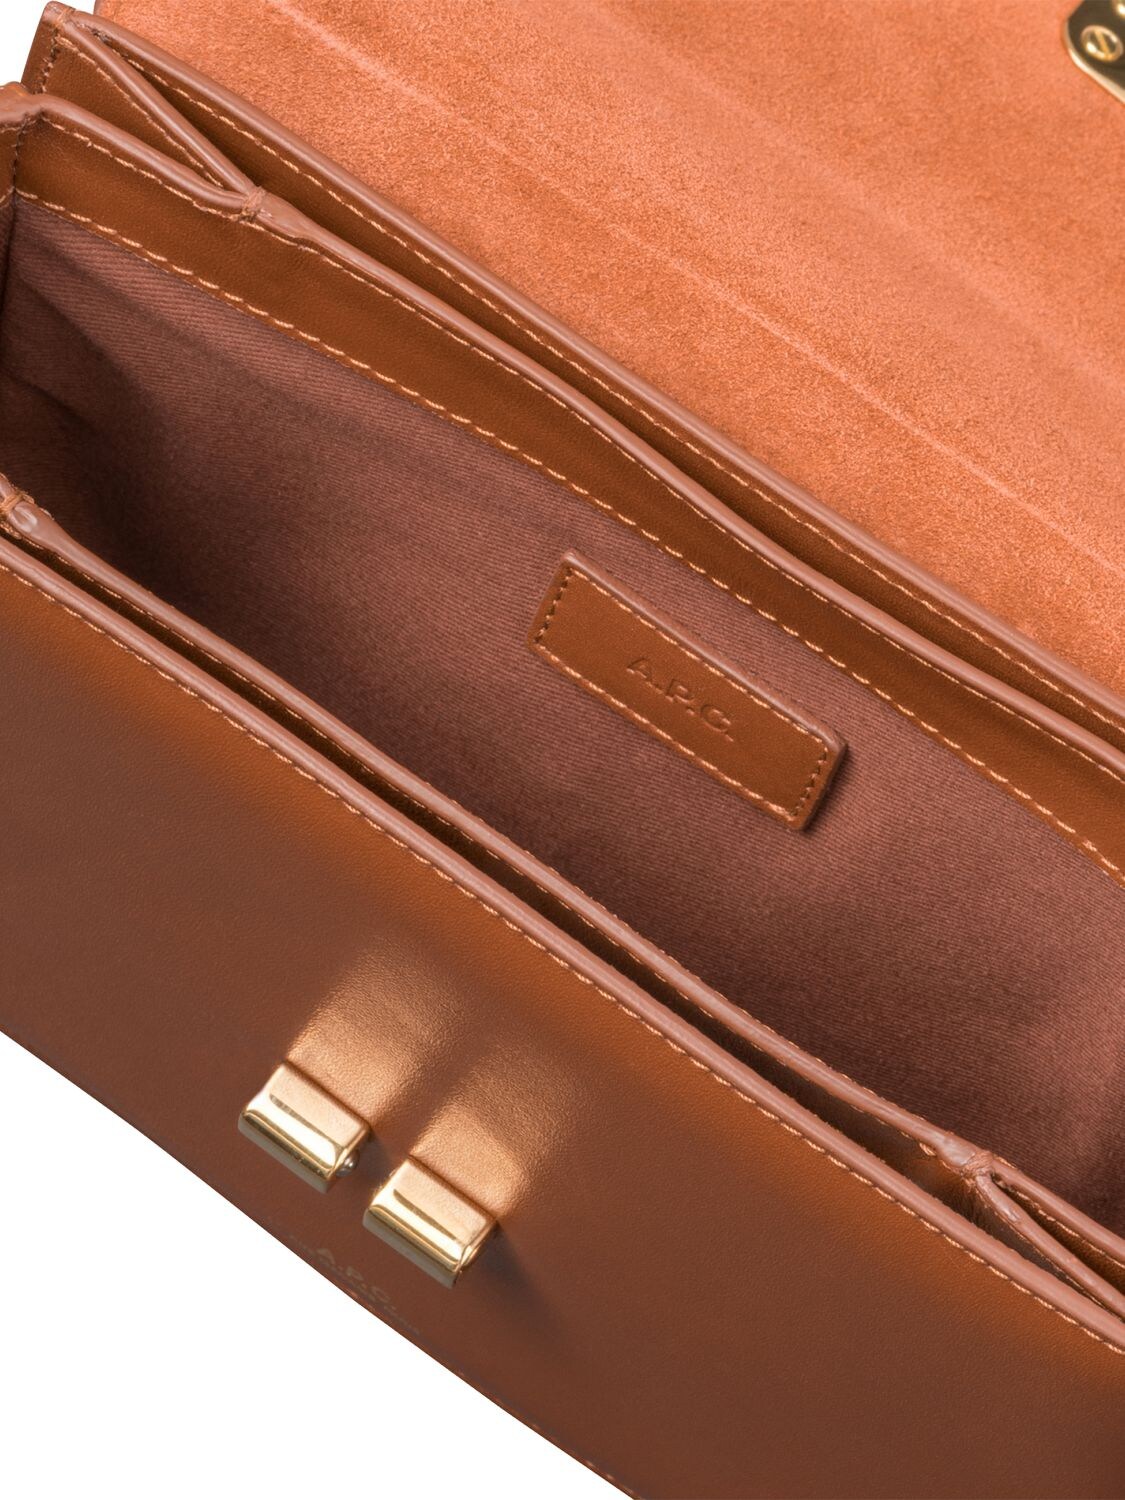 Shop Apc Small Grace Leather Shoulder Bag In Noisette